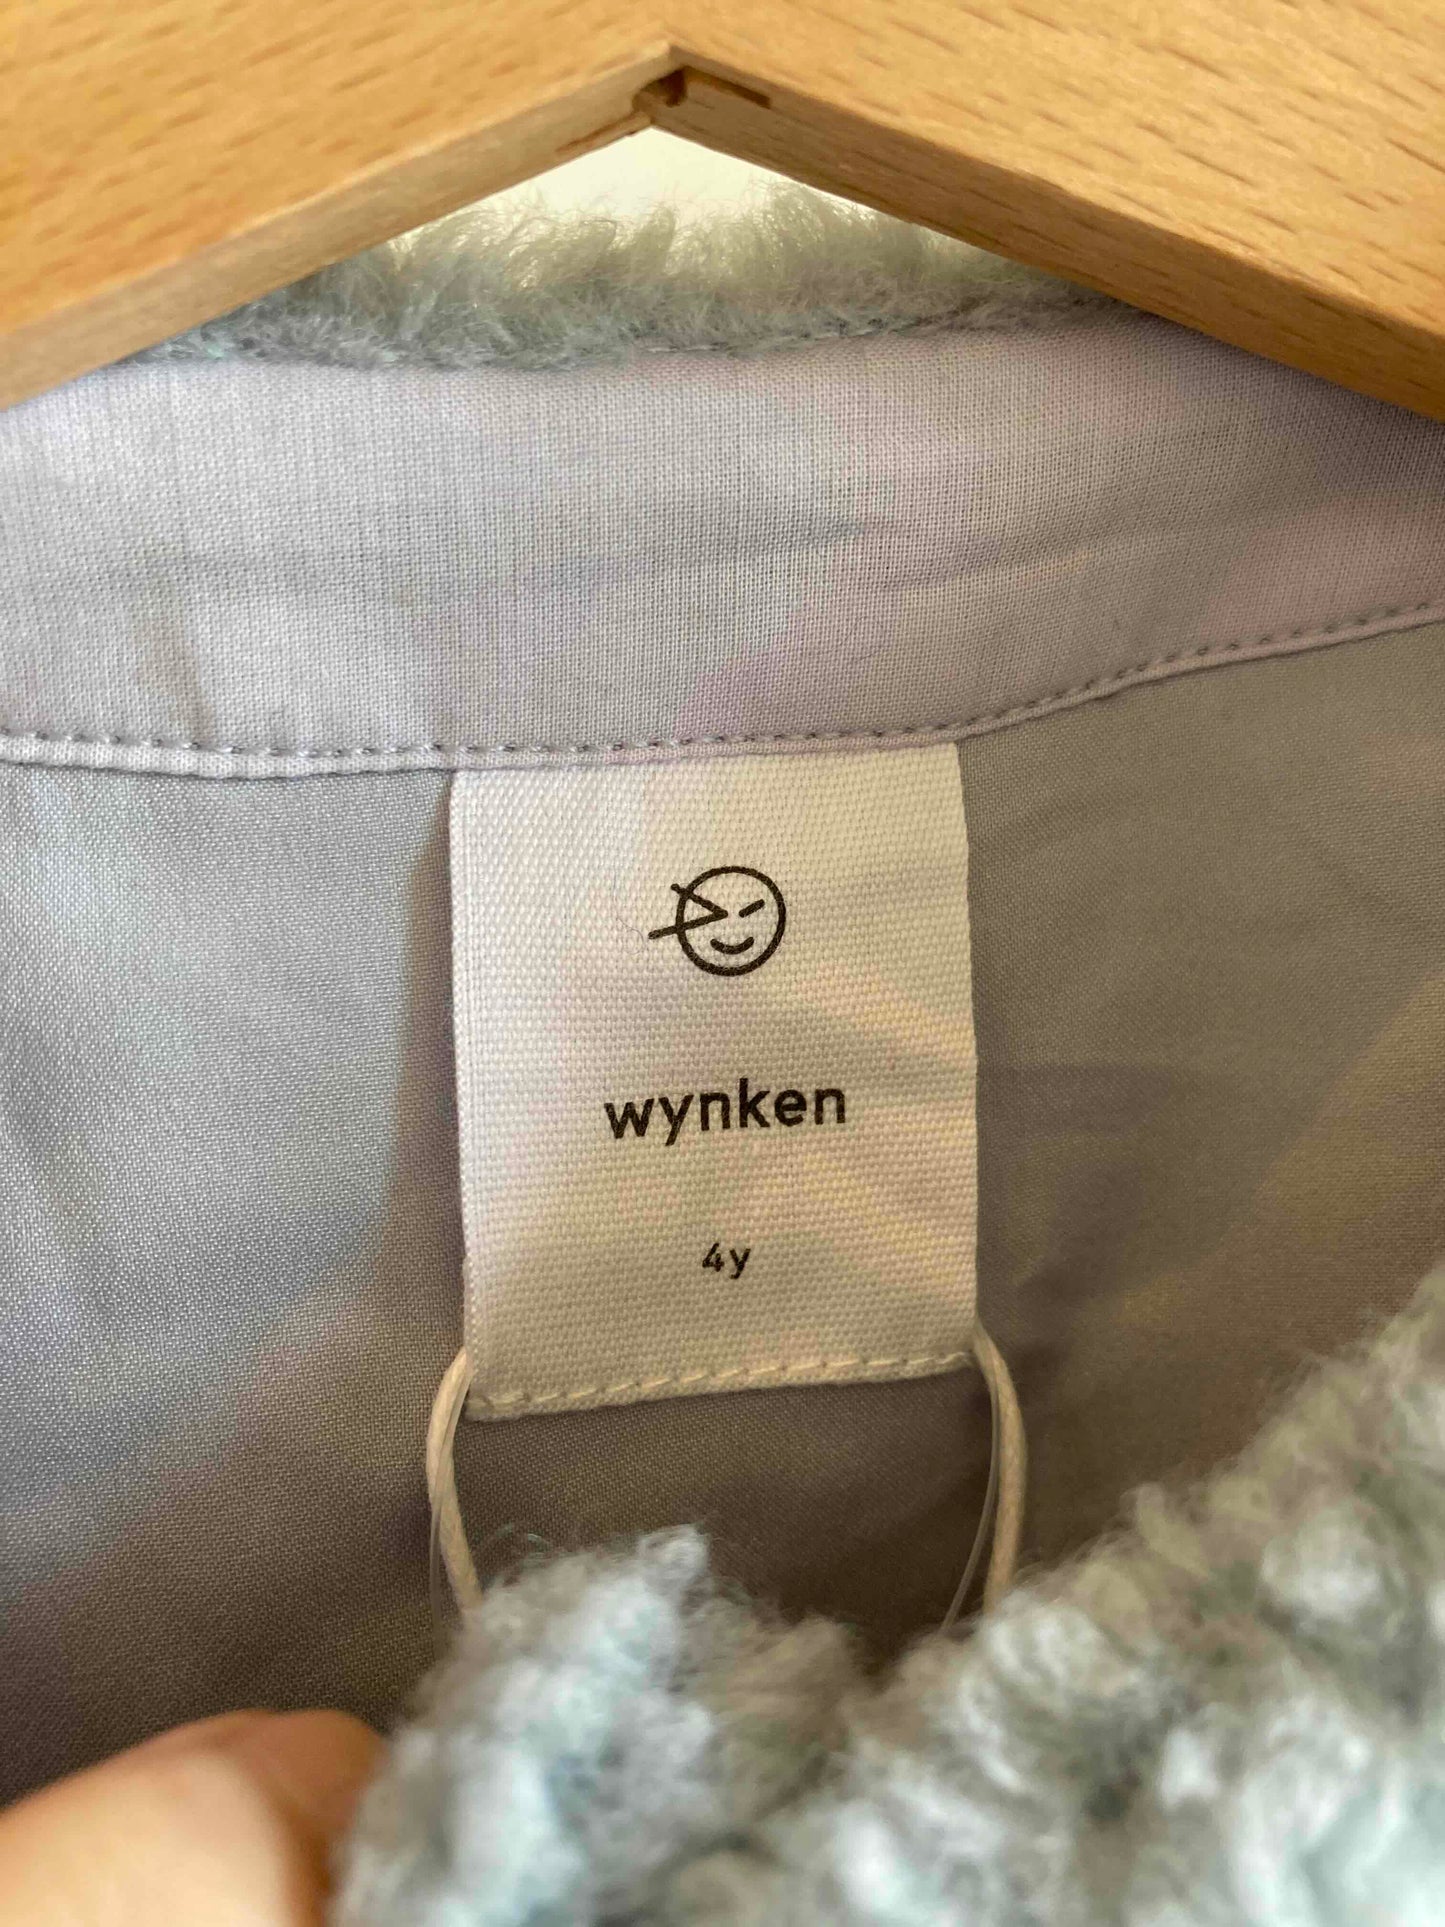 wynken / cresta jacket